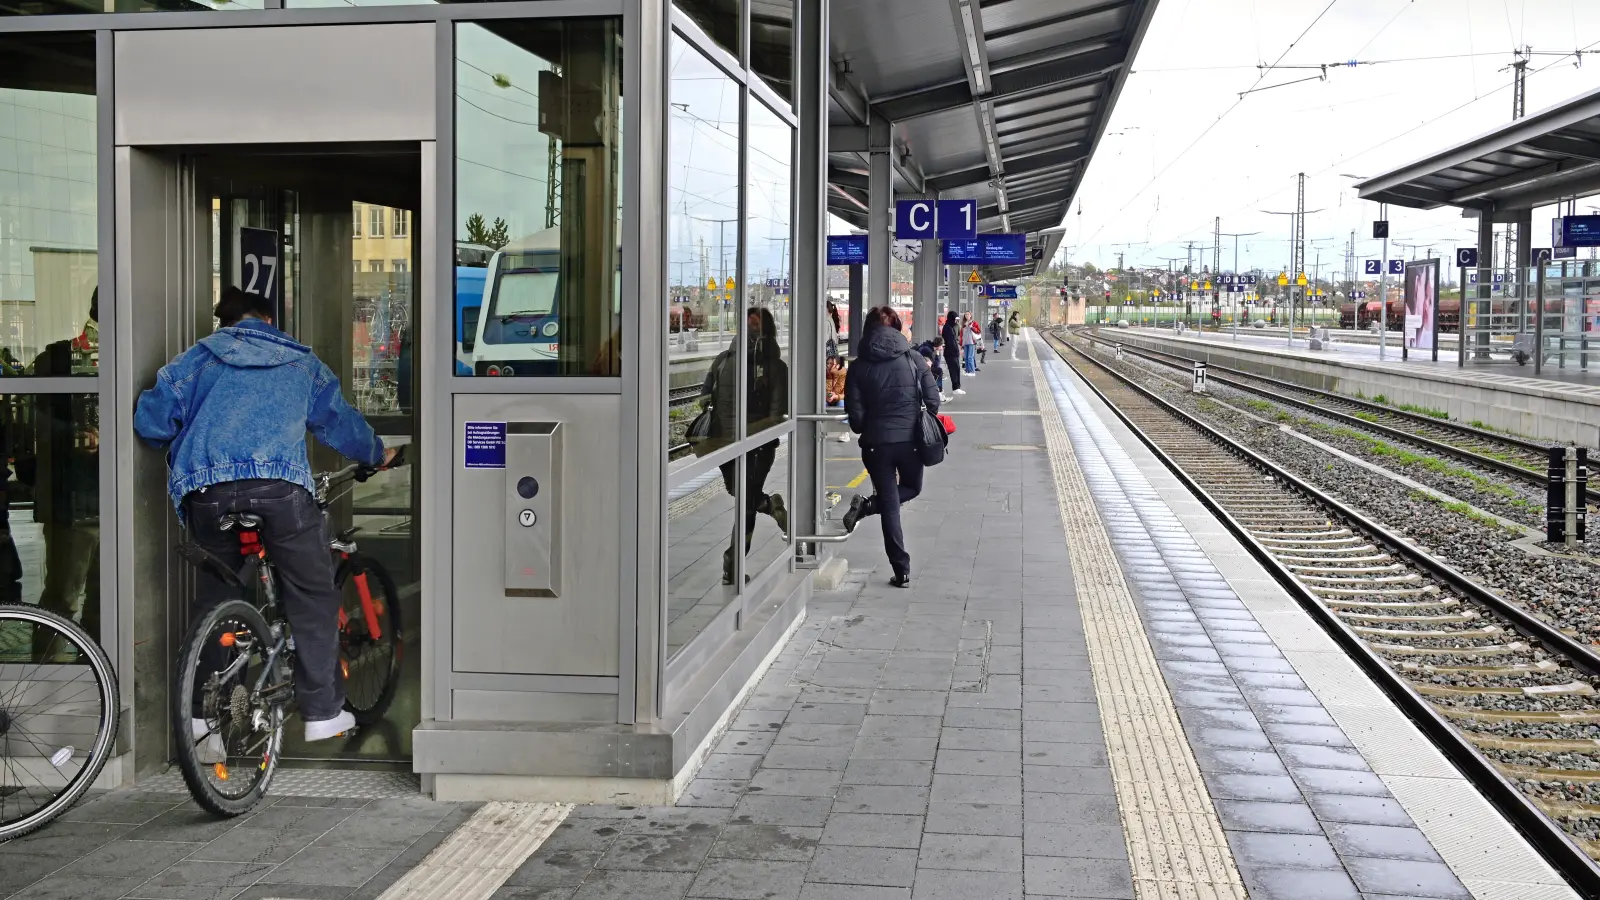 Seit dem Jahr 2022 ist der Bahnhof Ansbach offiziell eine „barrierefrei ausgebaute Station“. In der Region gibt es aber noch eine Vielzahl an Haltestellen, die nur eingeschränkt zugänglich sind. (Foto: Jim Albright)